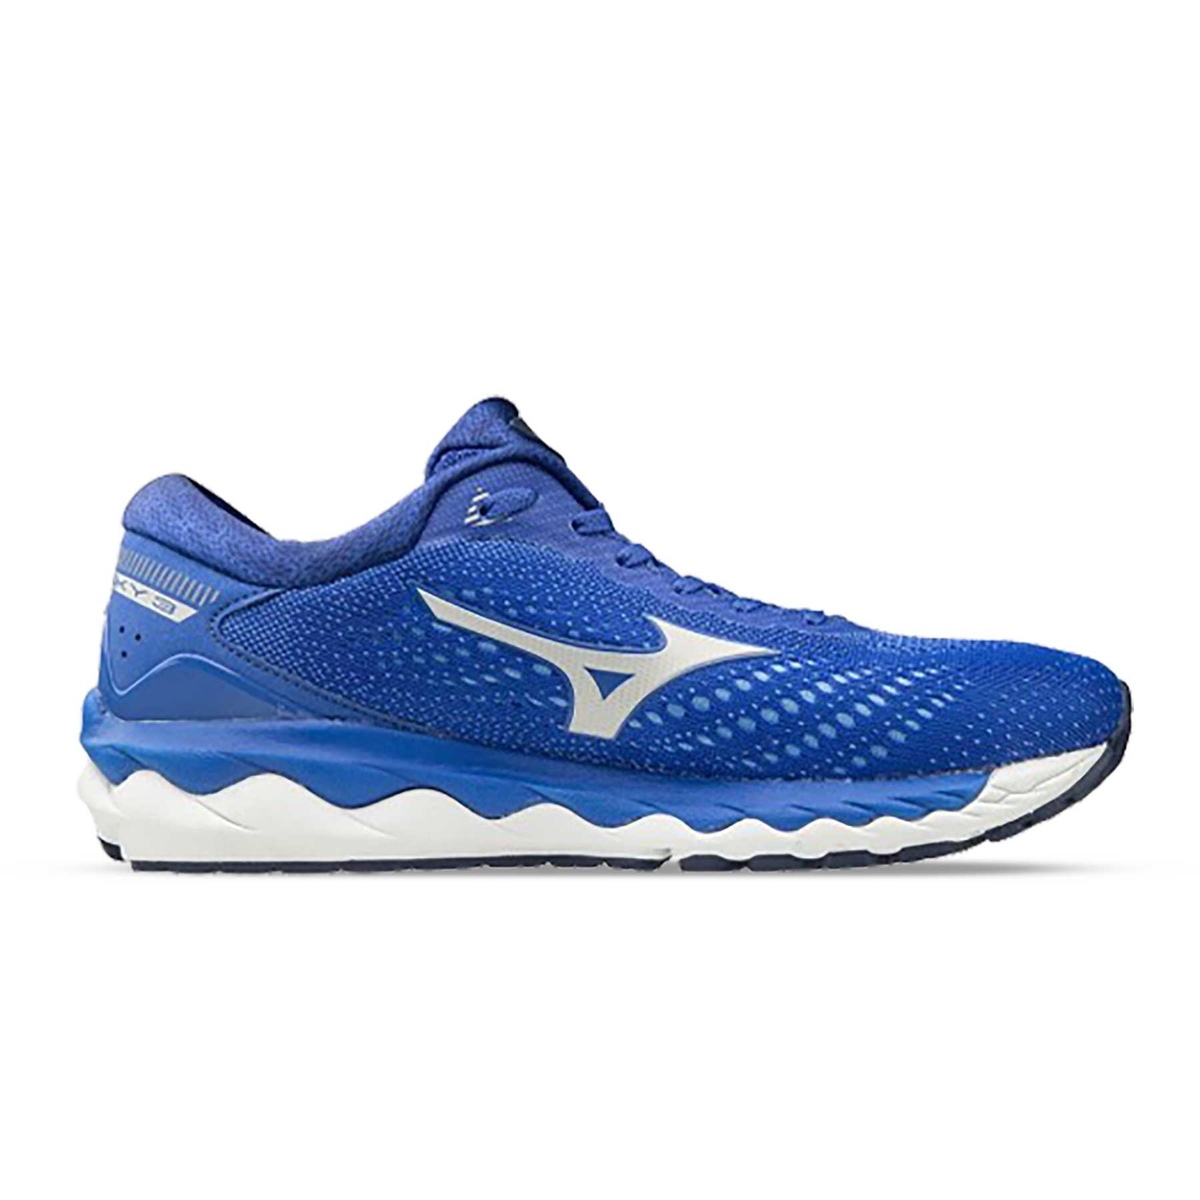 Outlet di scarpe da running Maxi Sport Mizuno economiche - Offerte per  acquistare online | Runnea